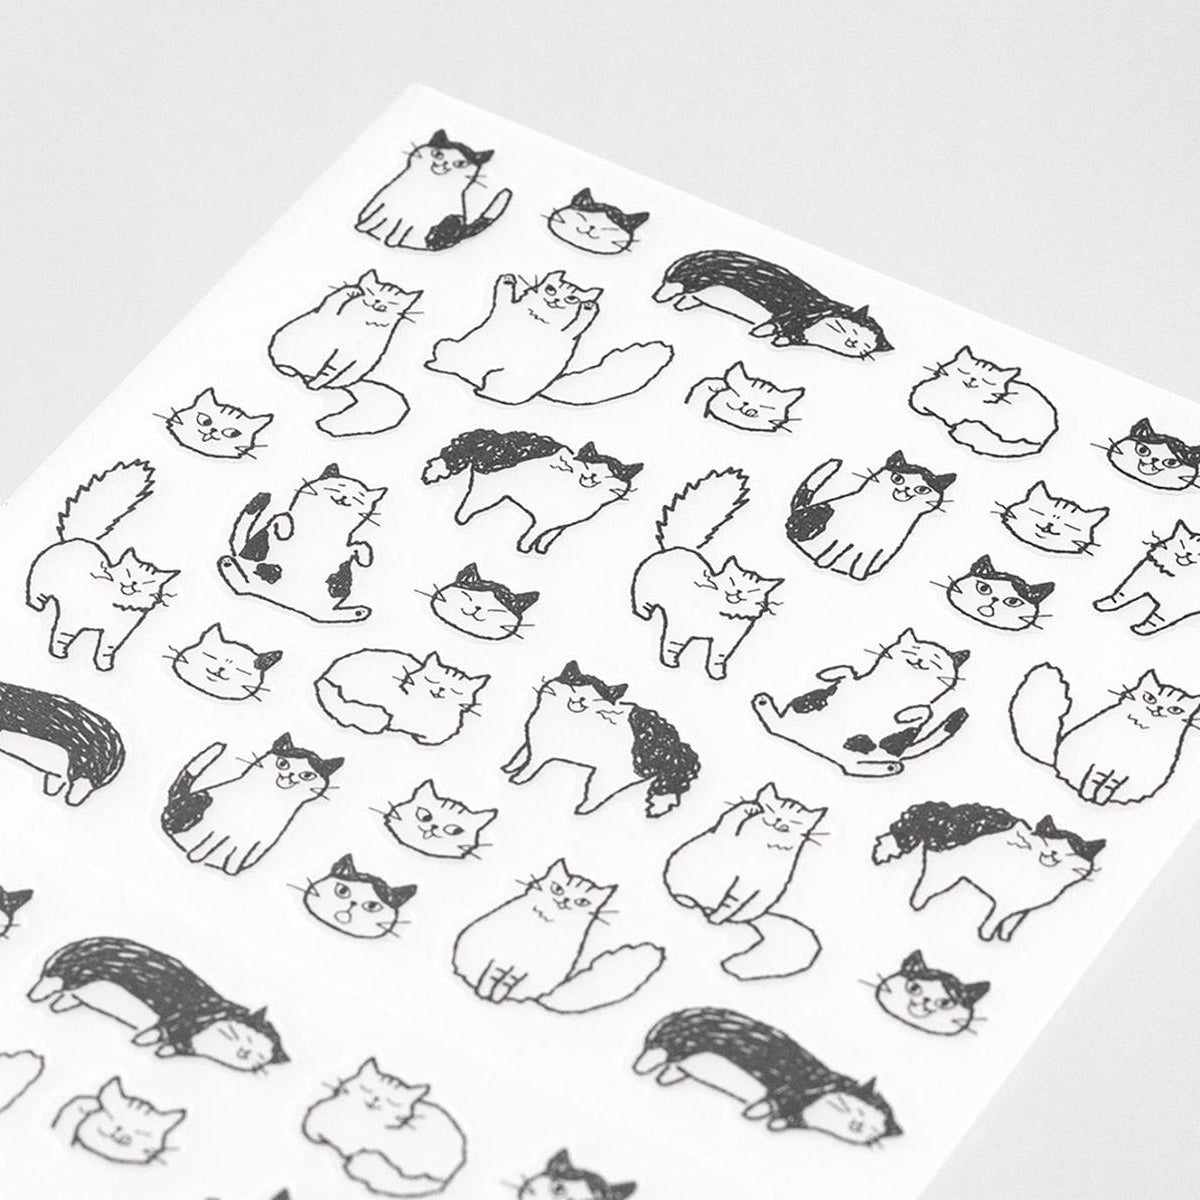 Hoja de pegatinas de gatos en diferentes posturas para decorar agendas, libretas o diarios